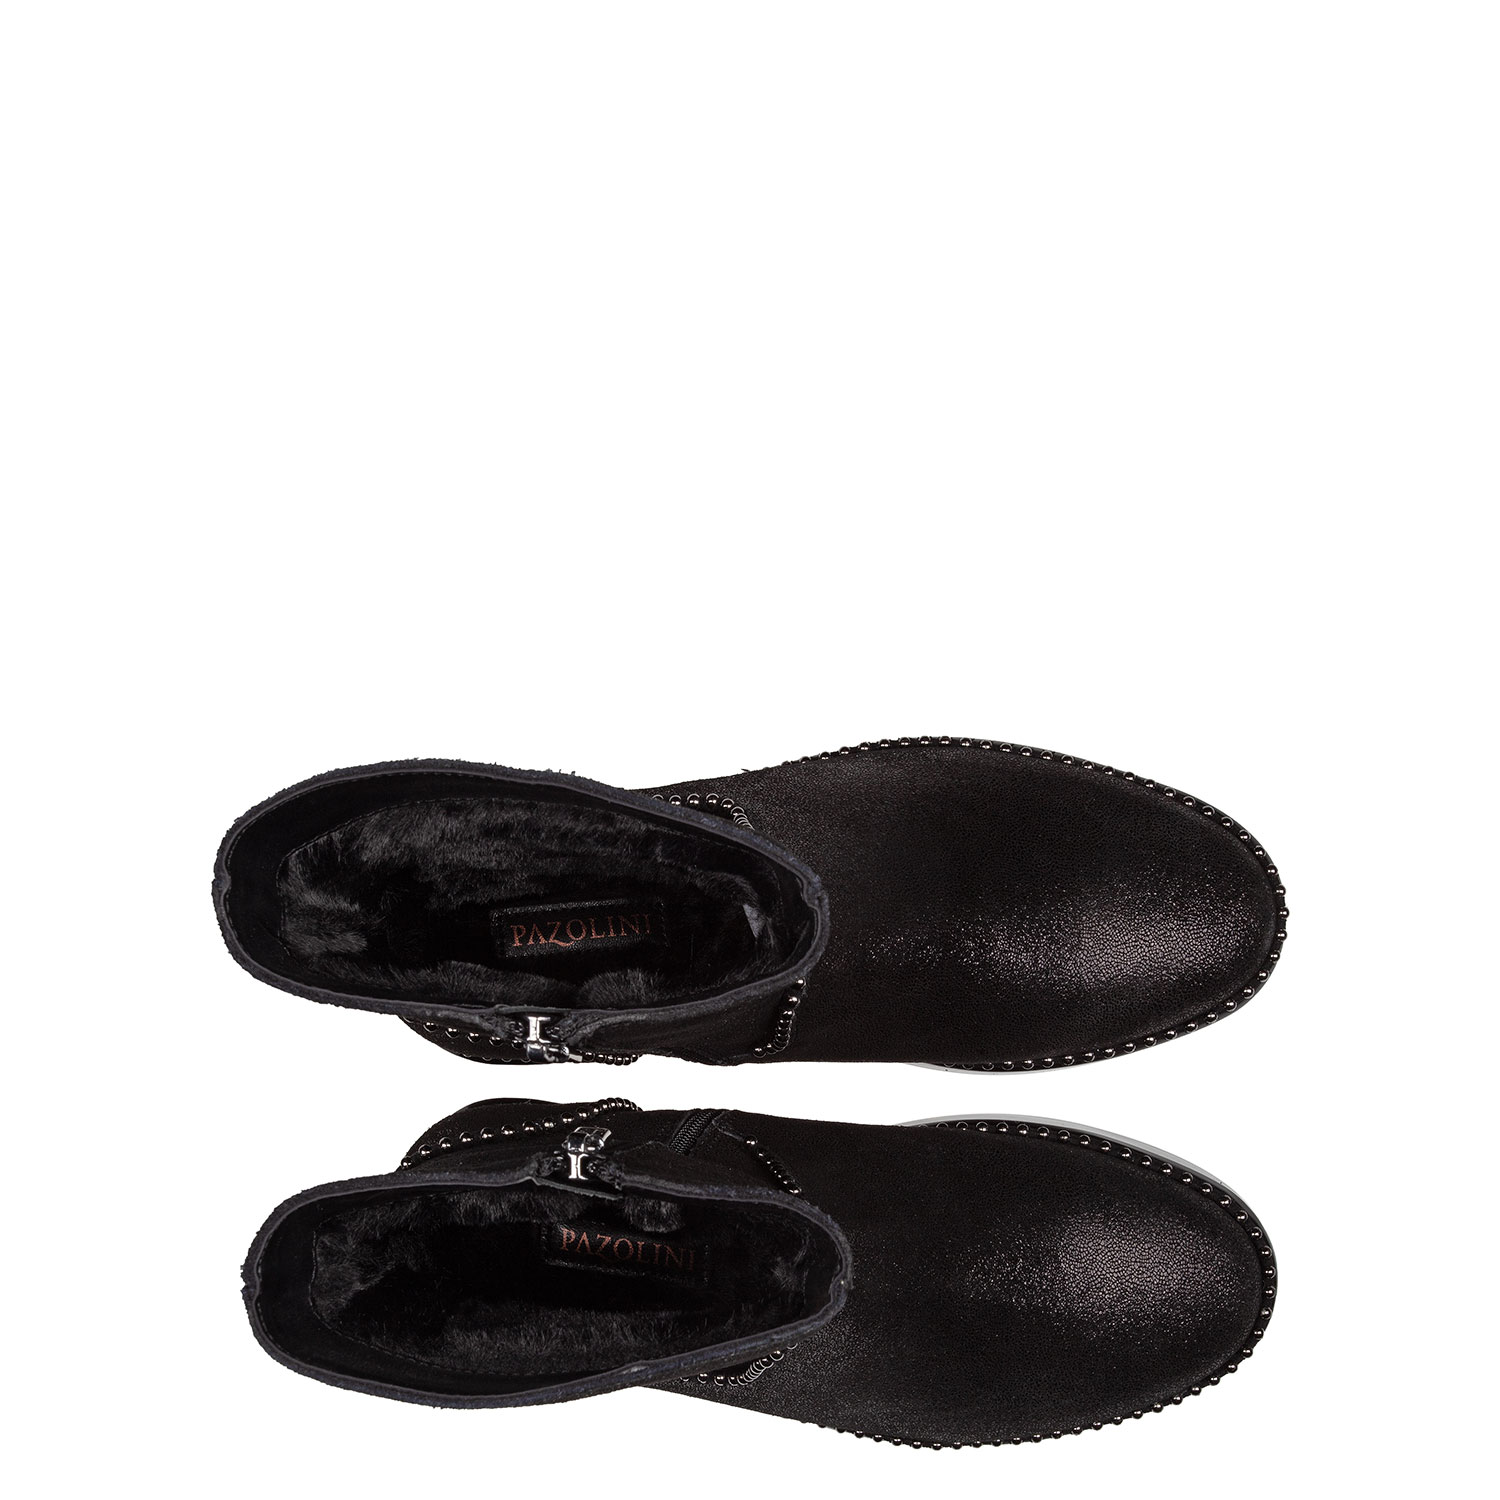 Зимние ботинки из натуральной кожи PAZOLINI JH-ABR20-1